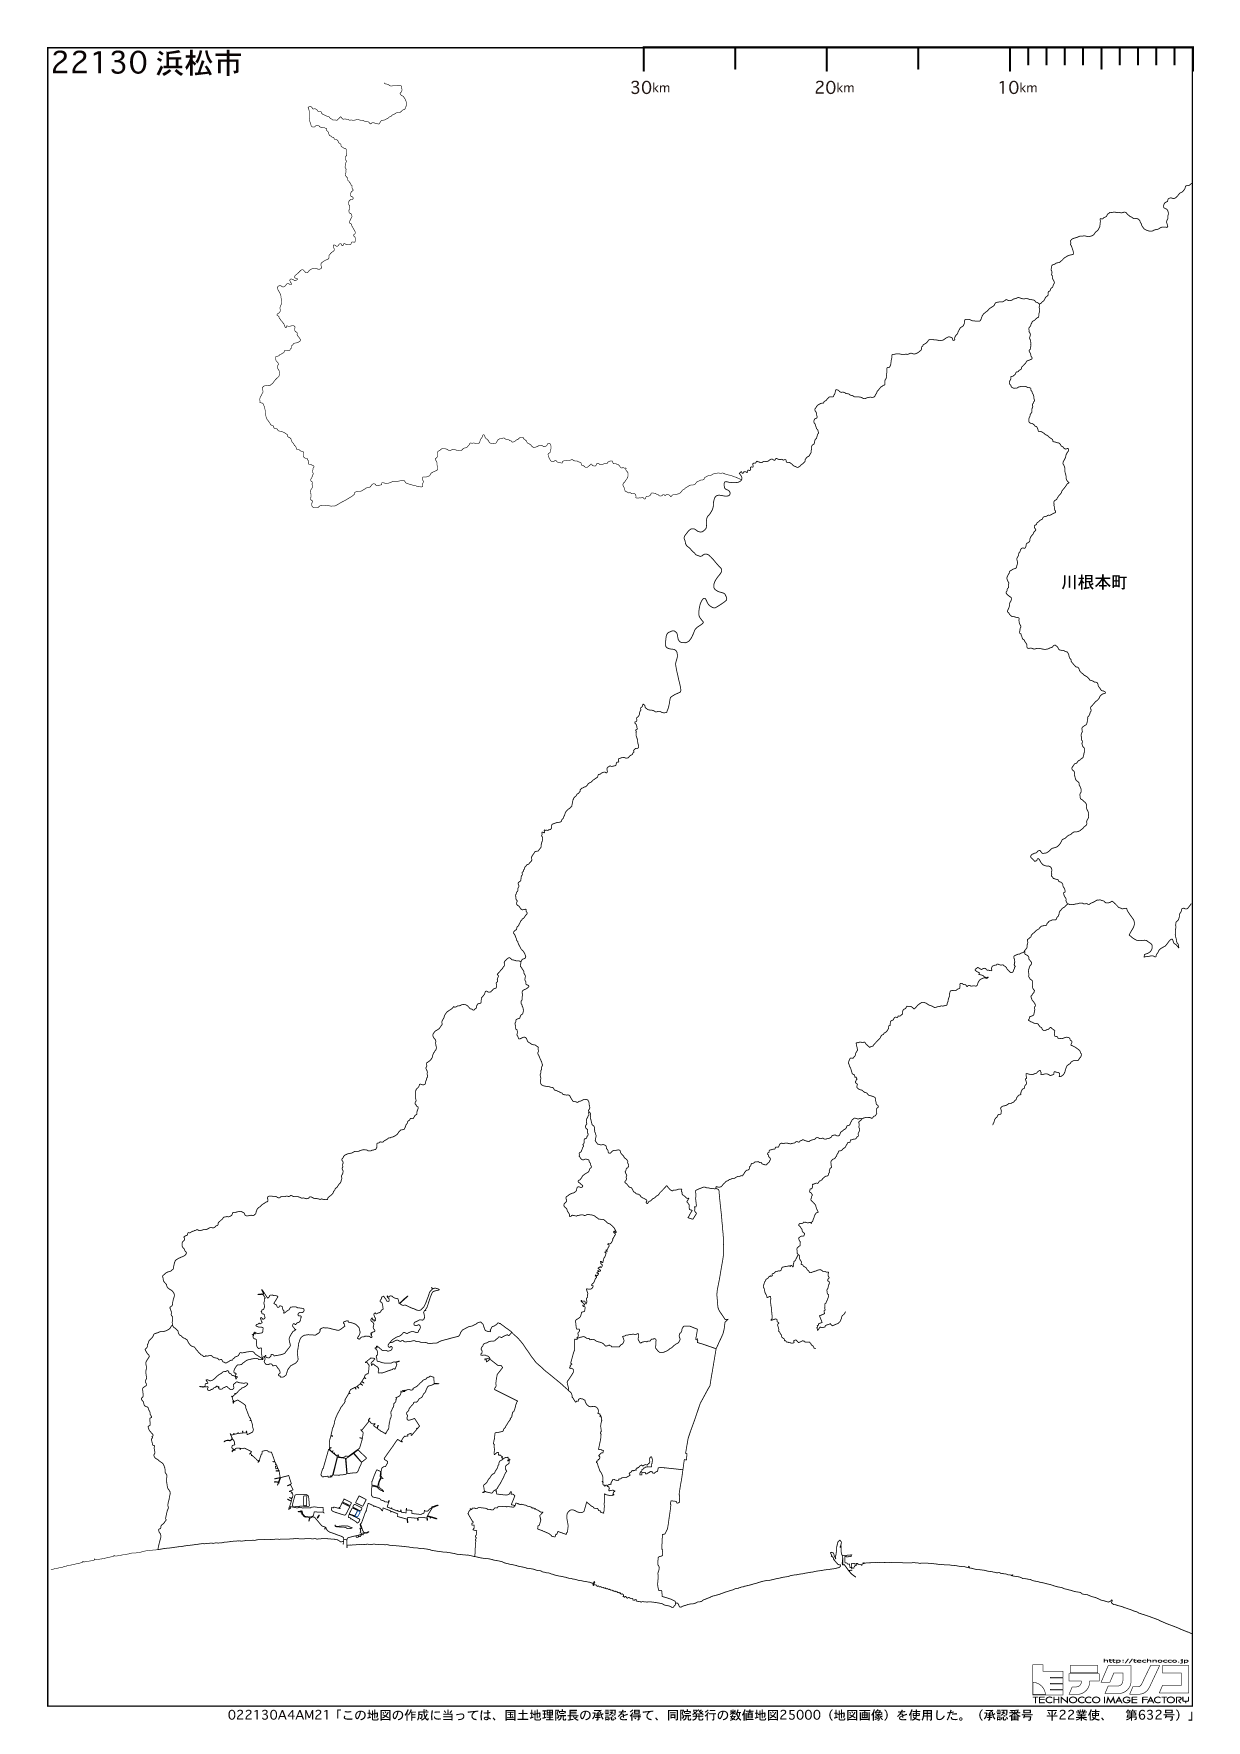 静岡県の白地図と市町村の合併情報